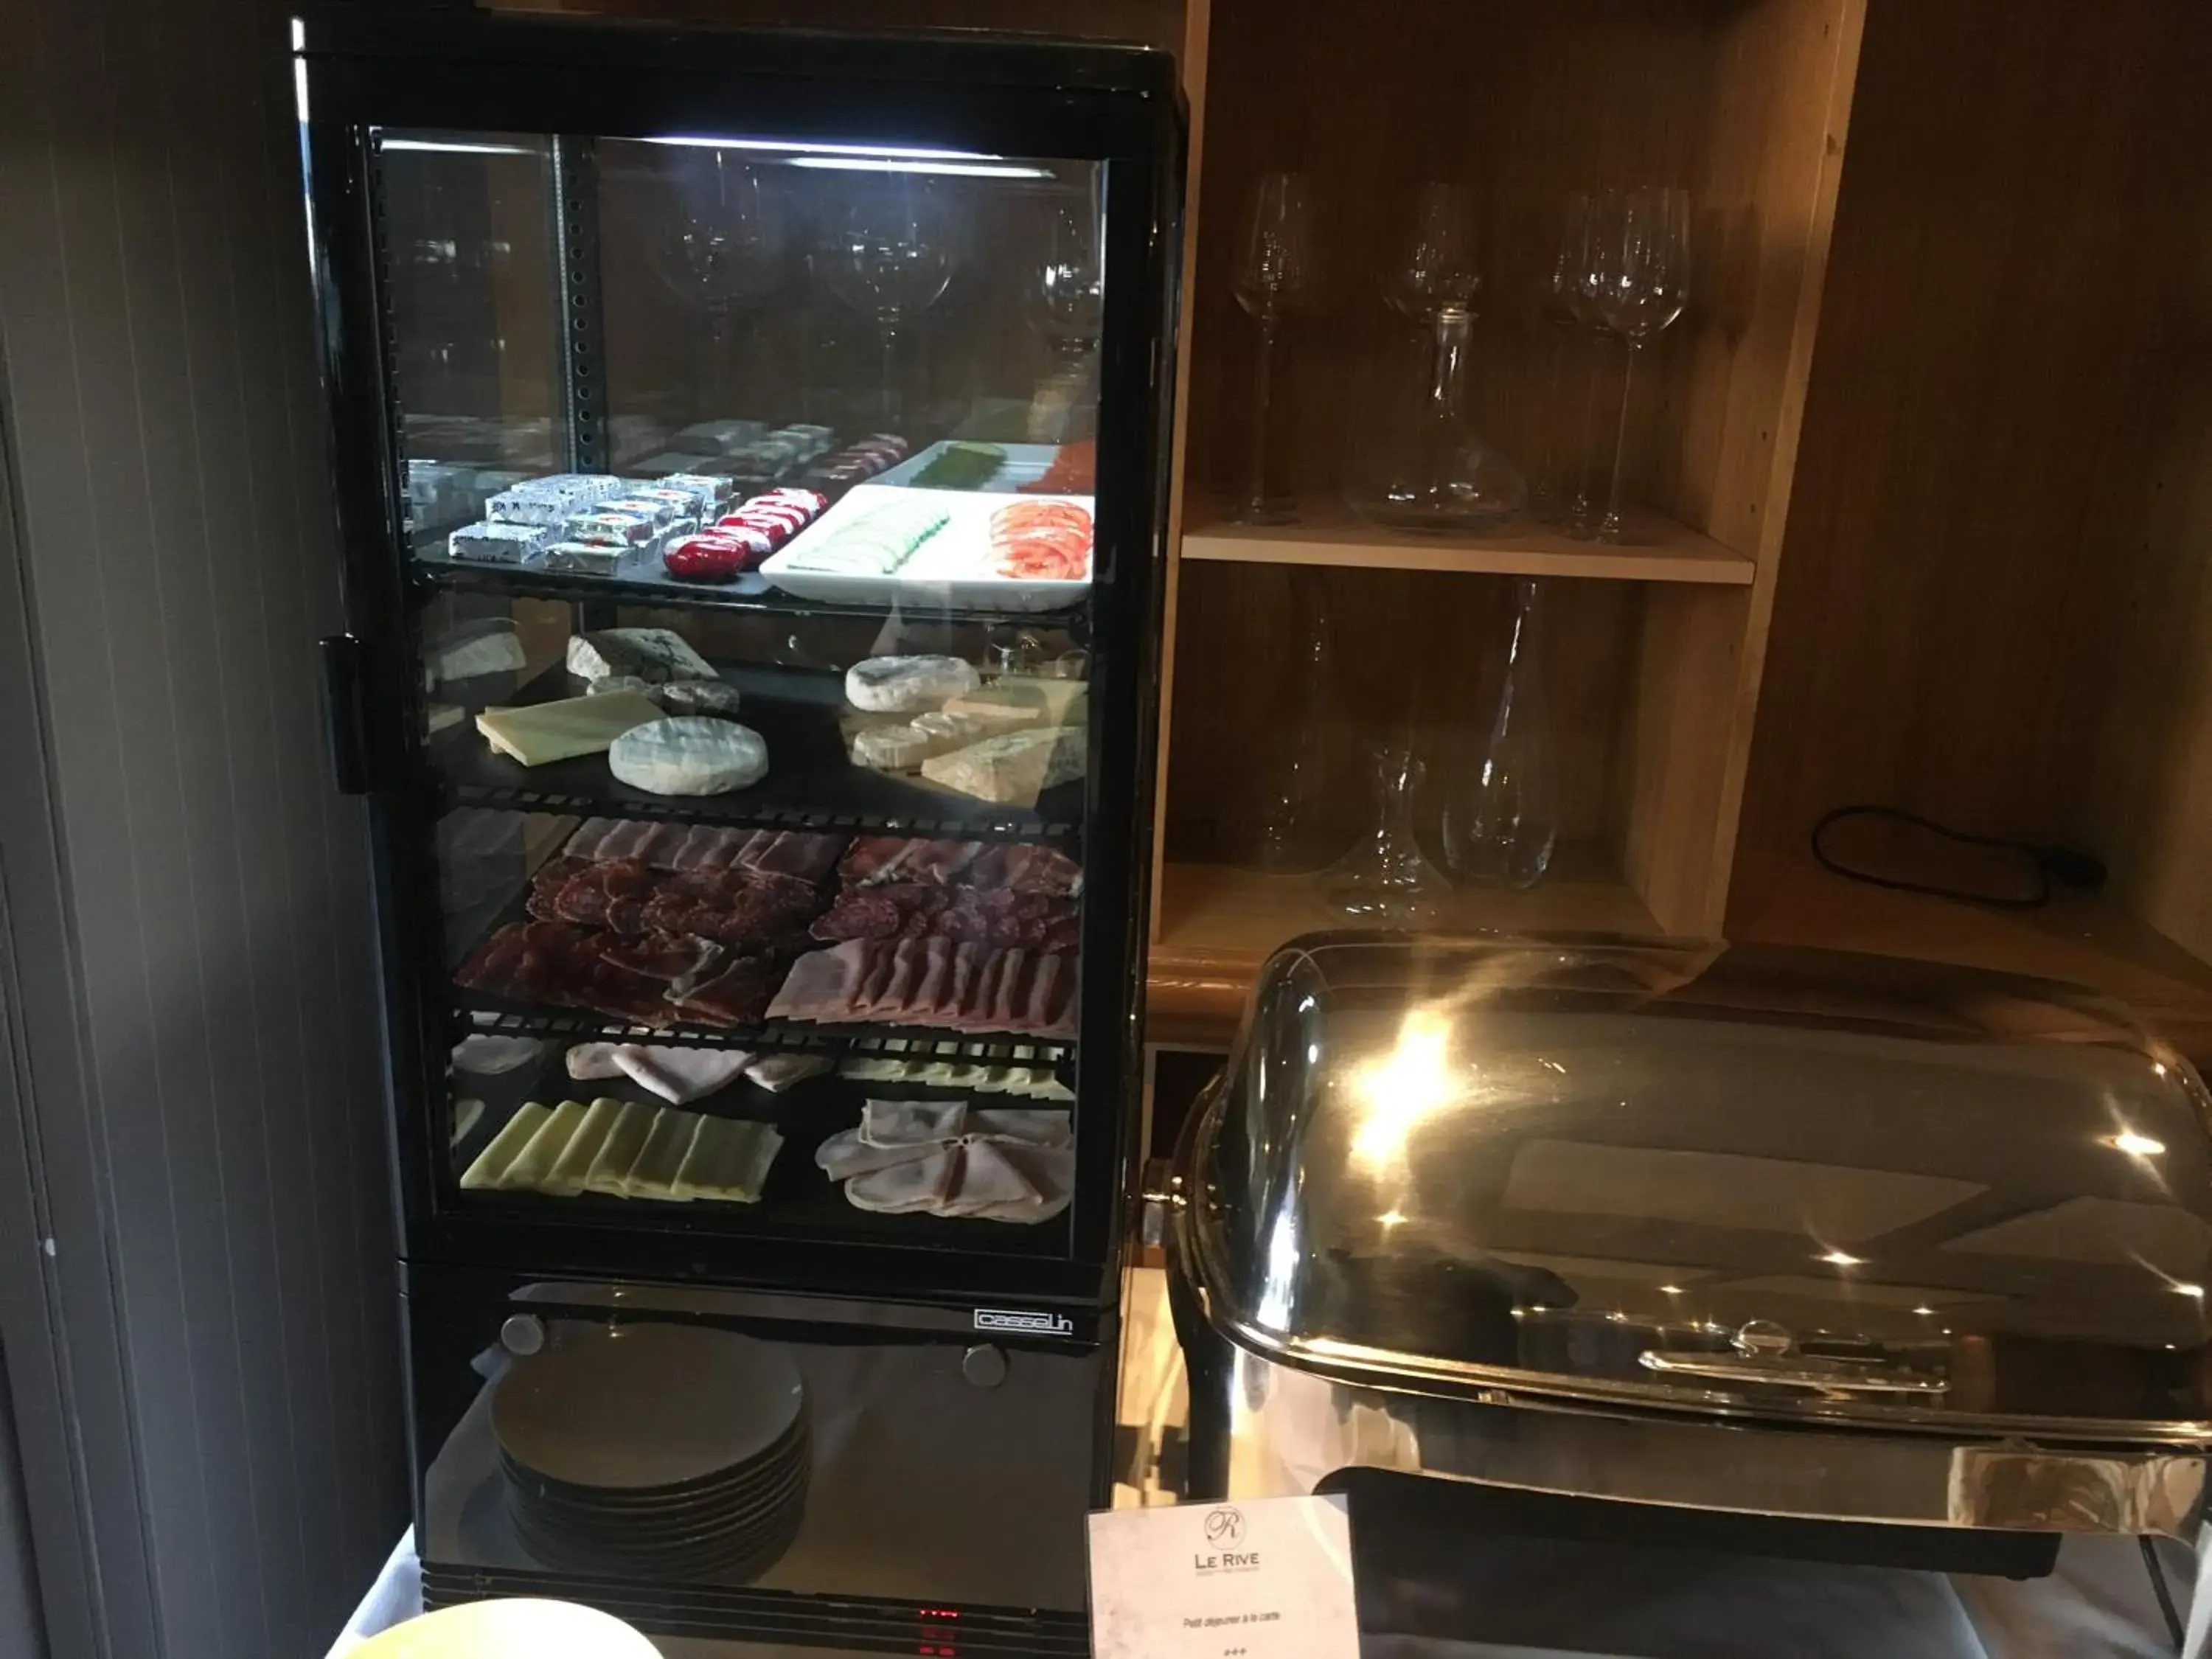 Buffet breakfast in Hotel Le Rive